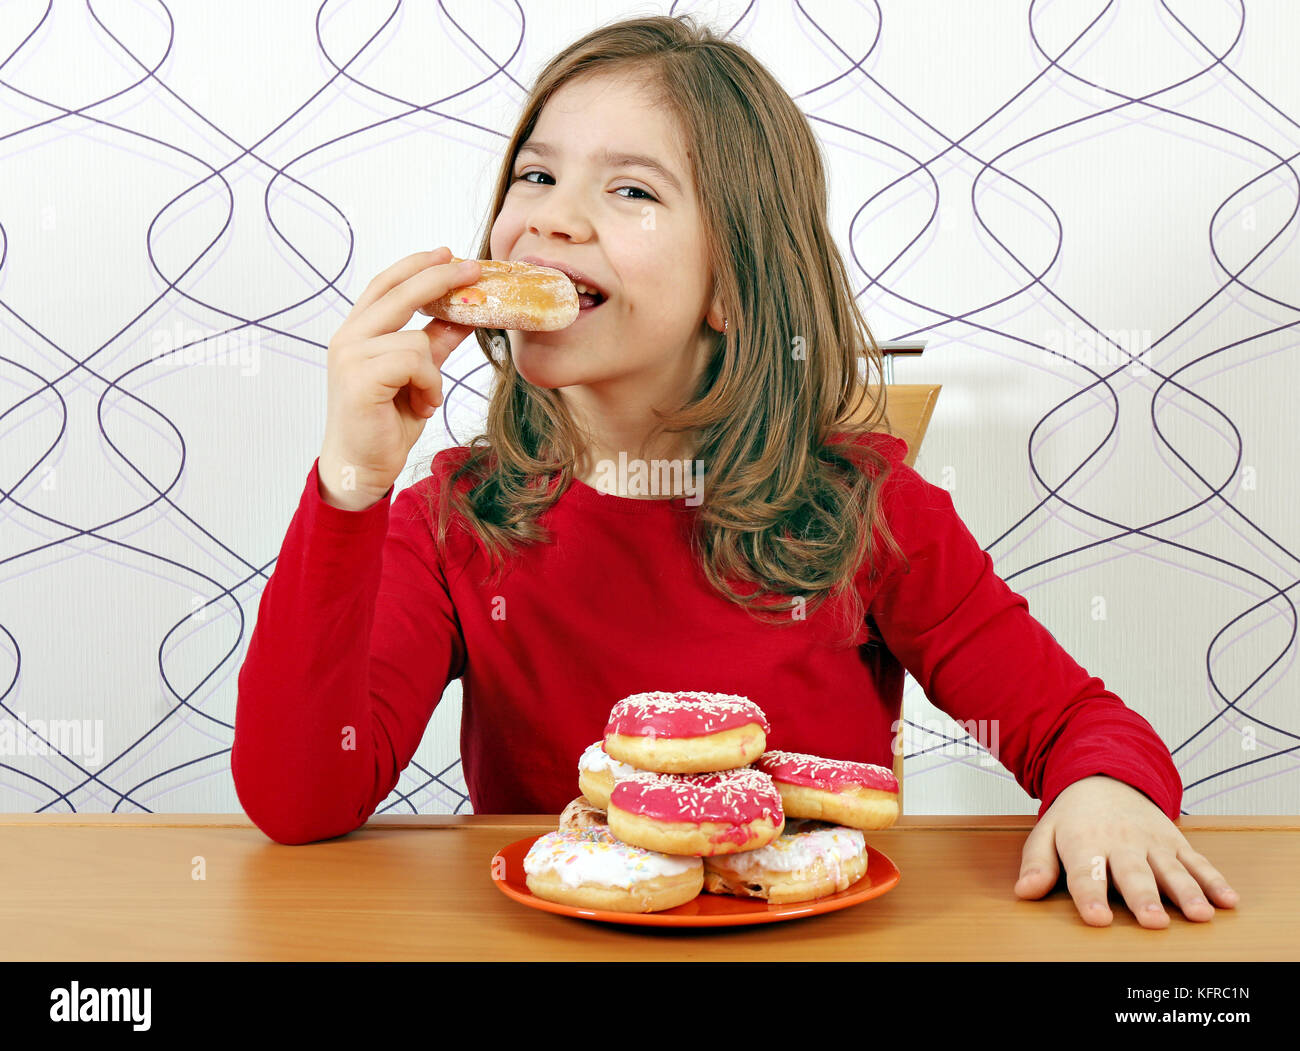 Голодные подростки. Толстая девочка ест пончик. Маленькая девочка голодная. Подросток ест торт. Девочки подростки едят печенье.